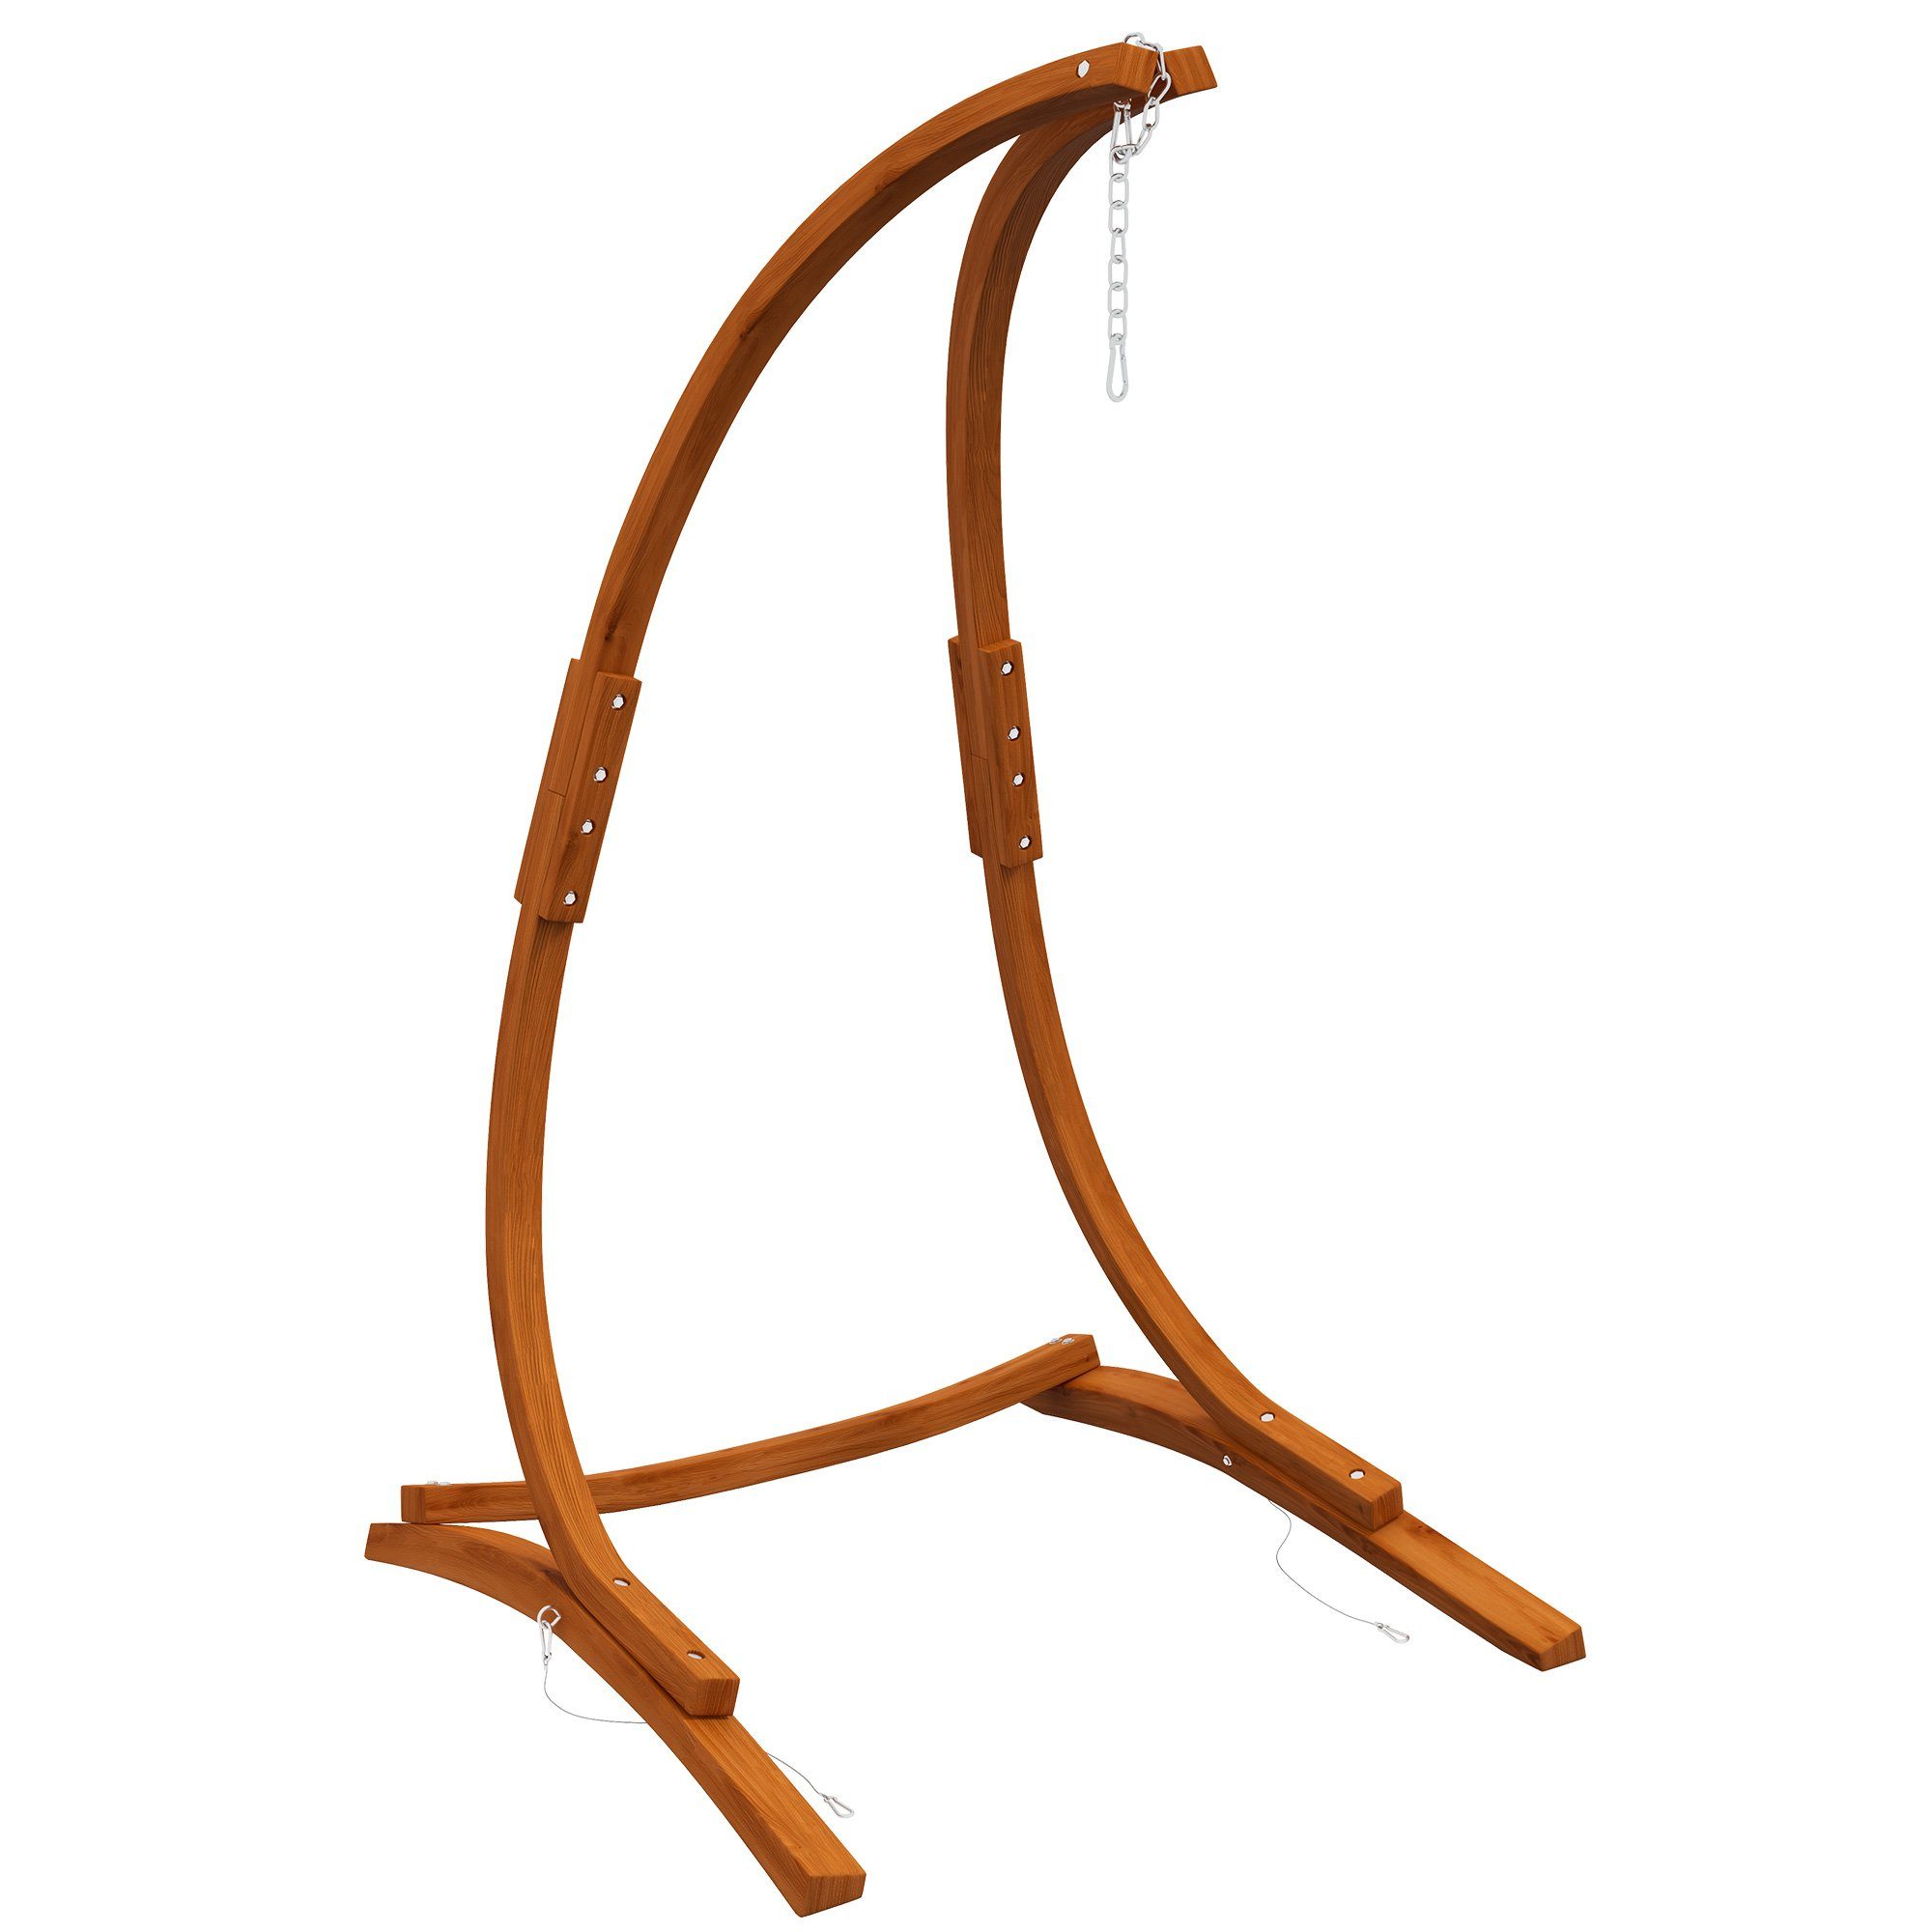 Outsunny Гамакиgestell Hängestuhlgestell aus Holz Ständer für Hängestuhl Hängesesselgestell, für Outdoor Indoor Teak 178 x 143 x 180 cm